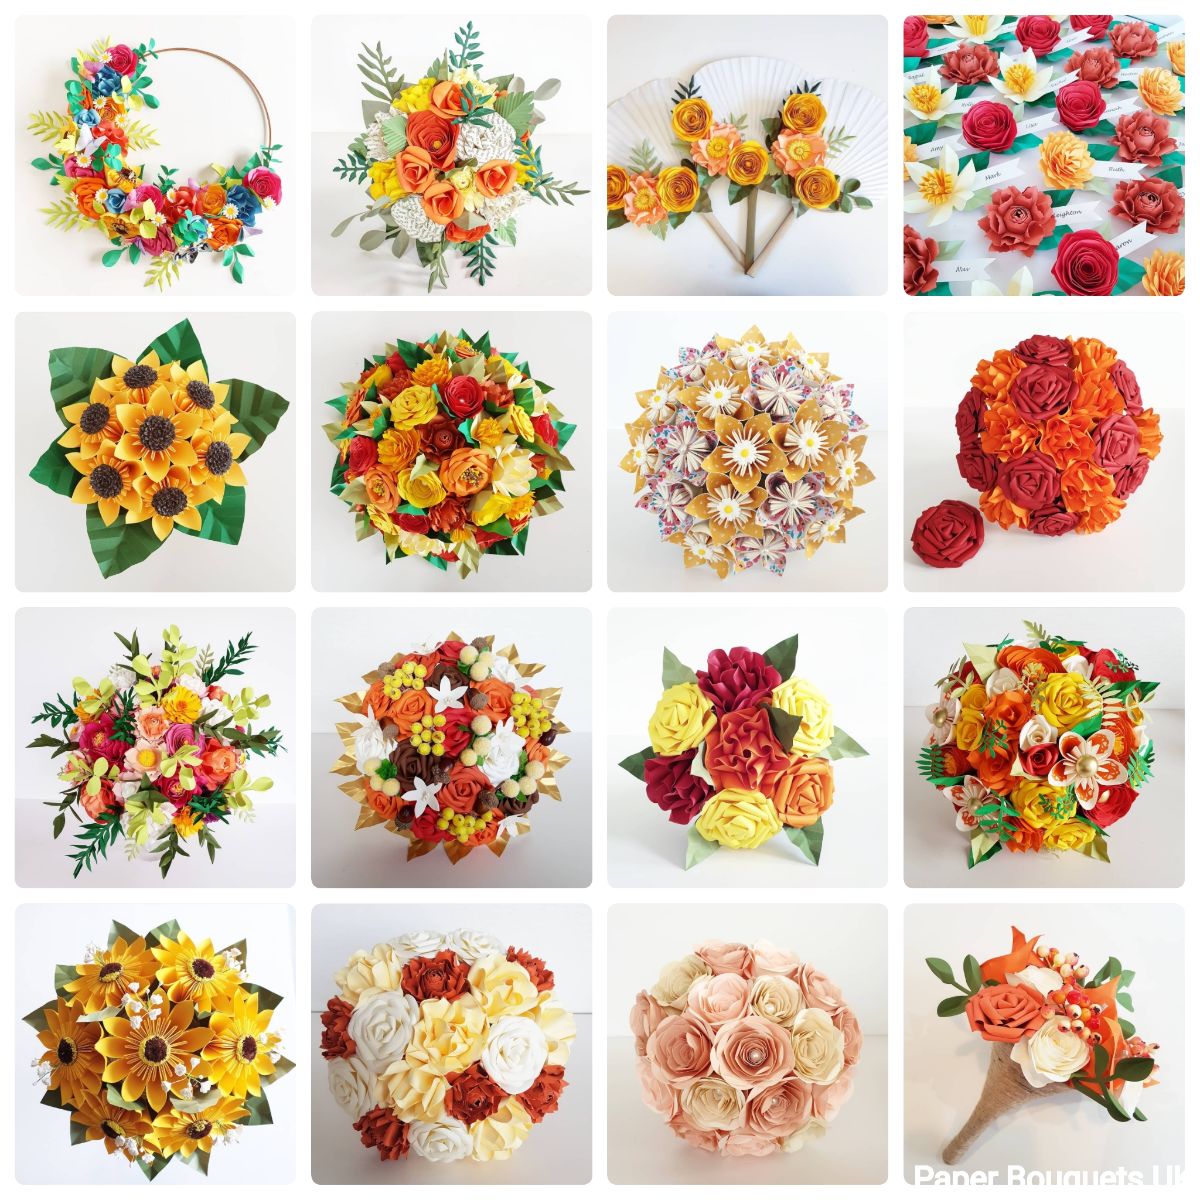 Paper Bouquets UK-Image-104